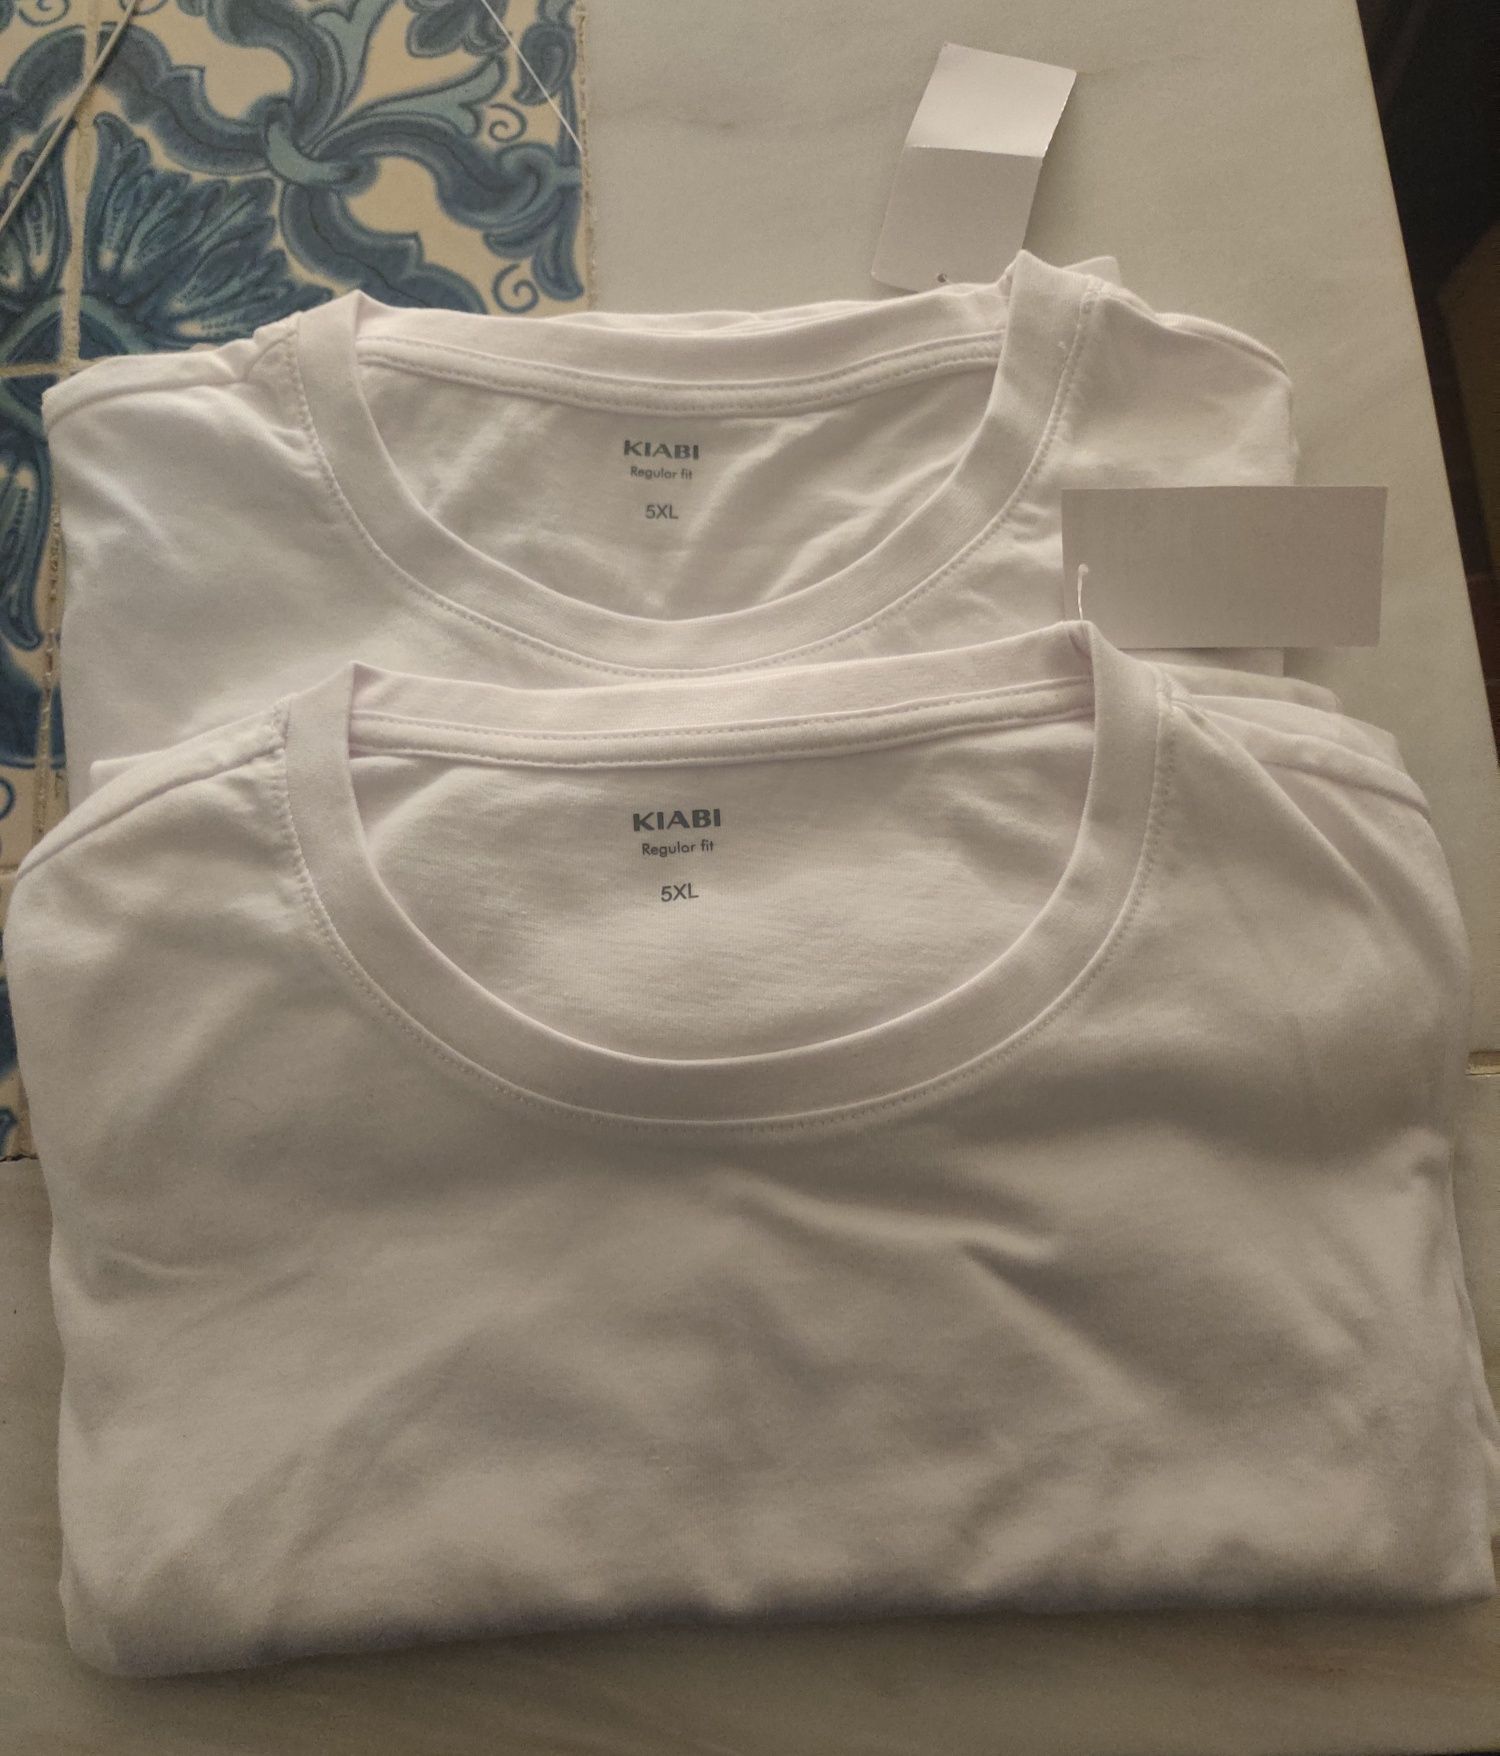 T-shirt branca lisa Kiabi 5XL tamanhos grandes (2 unidades)